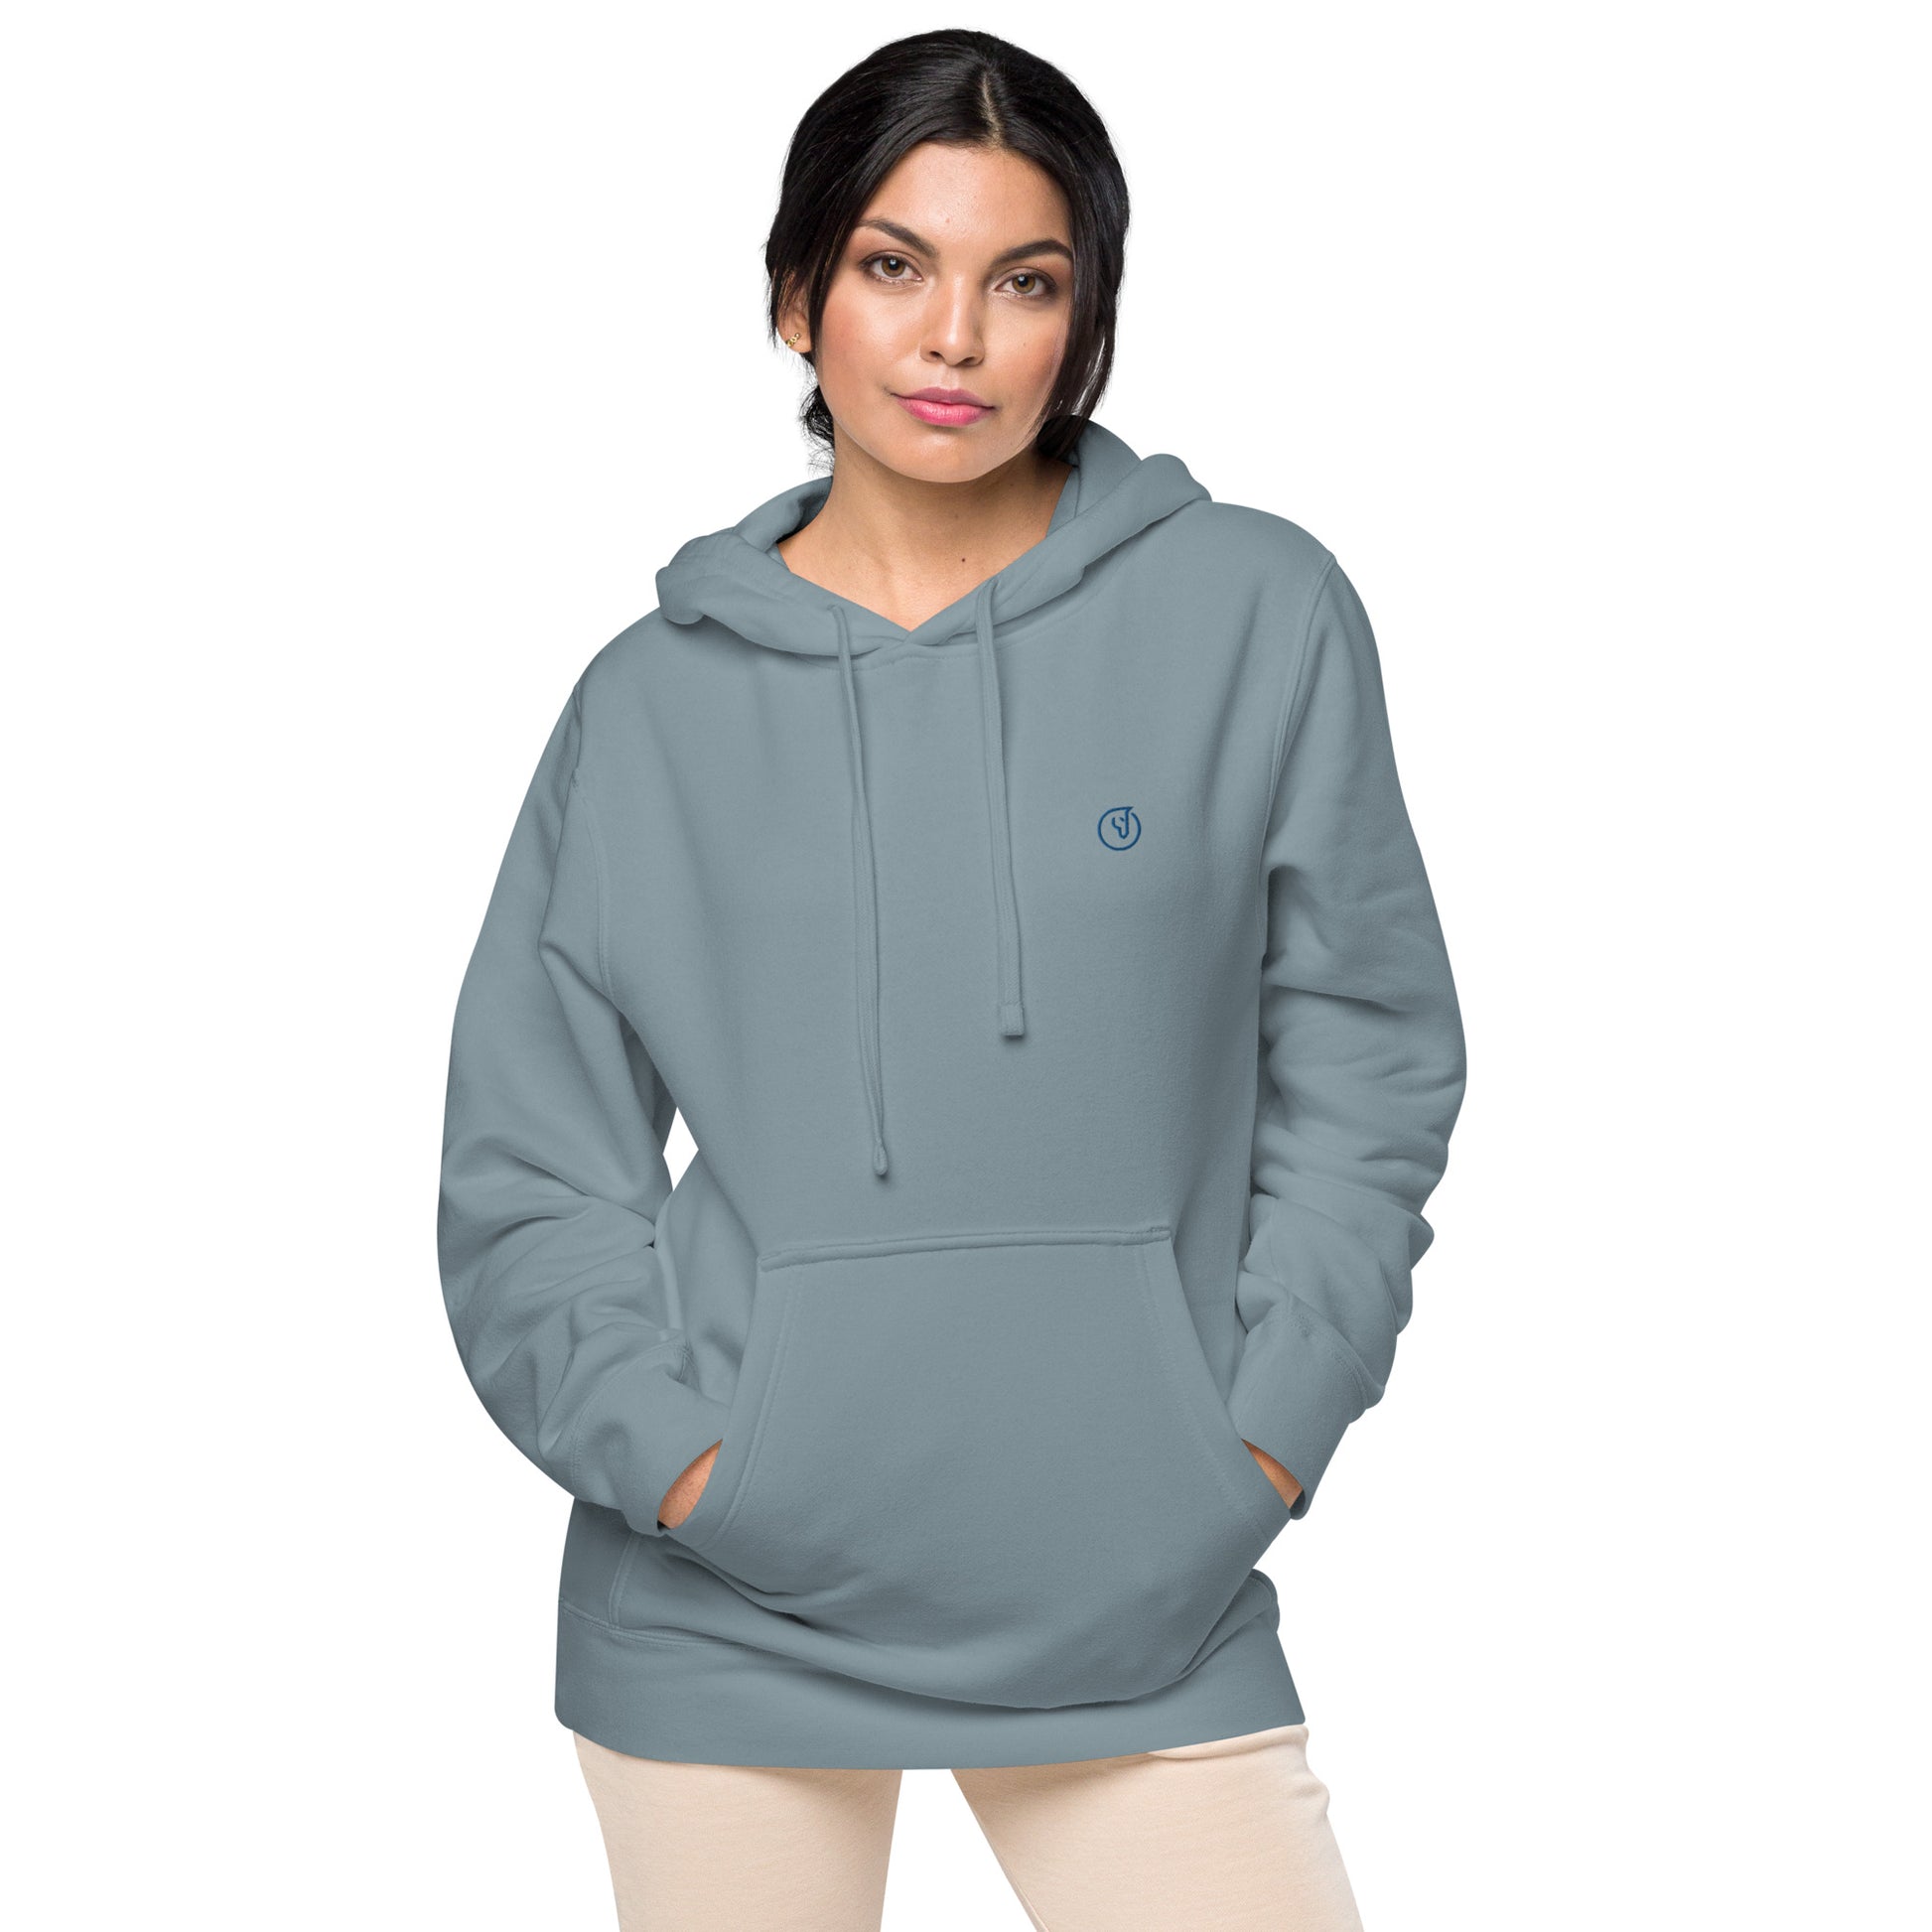 Humble Sportswear, women’s hoodies, women’s washed hoodies, women’s faded hoodies, pigment dyed hoodies